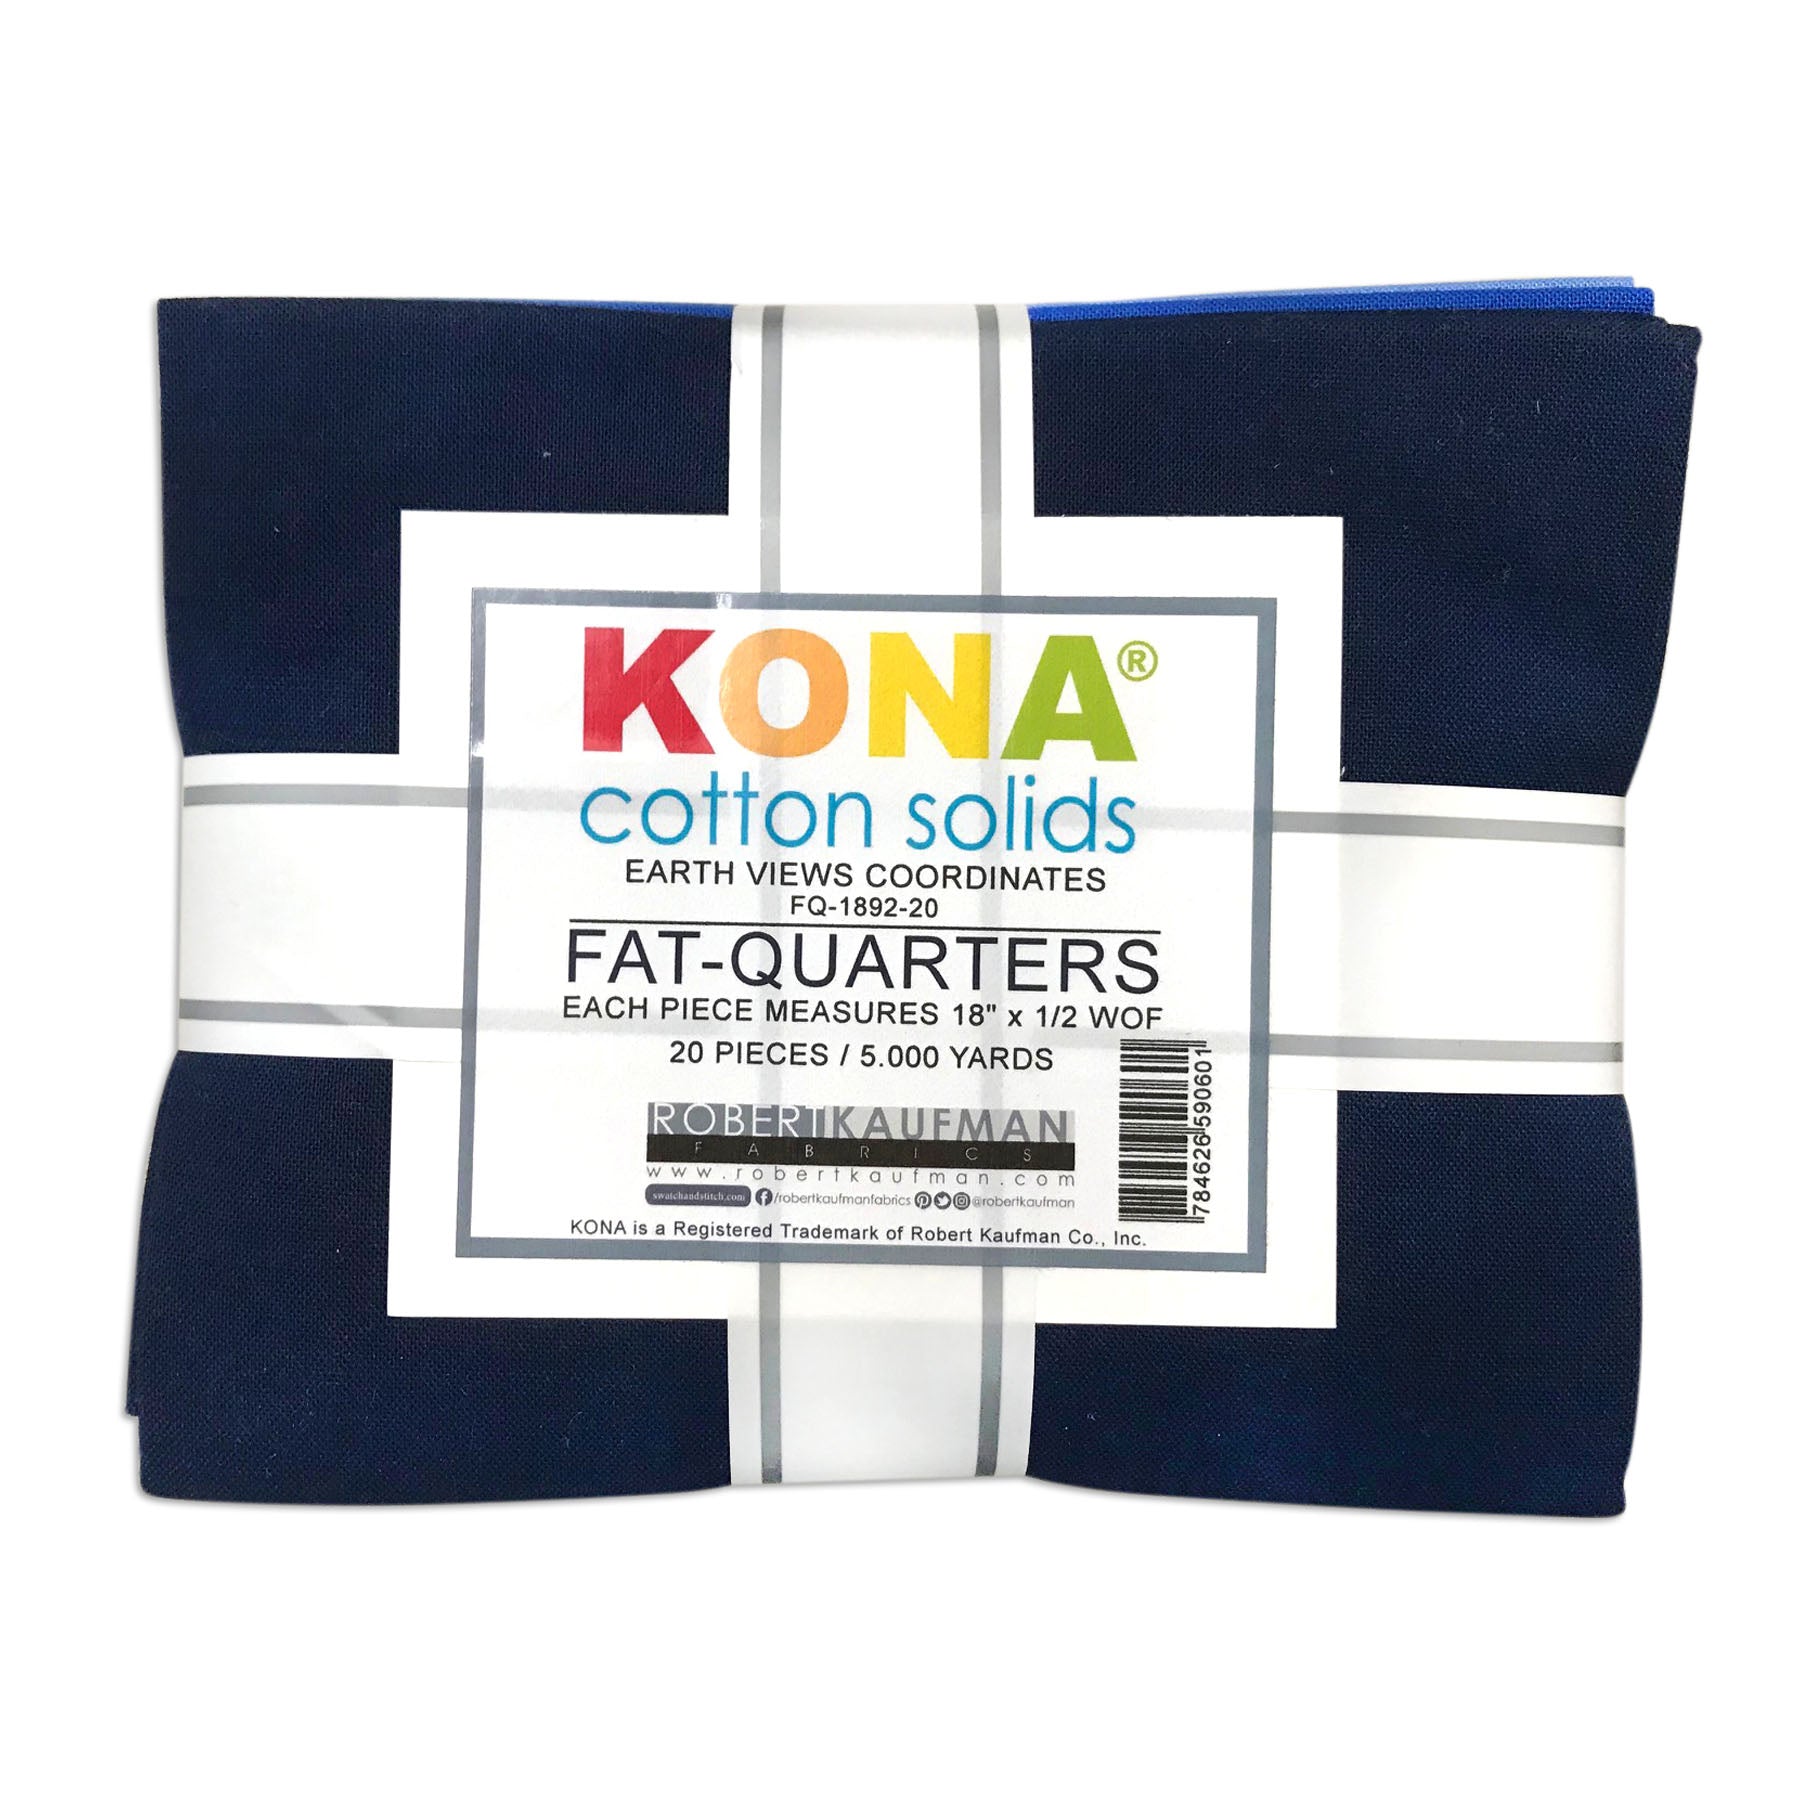 Earth Views Coordinates 20 Fat Quarter Bundle - Kona Cotton Solids